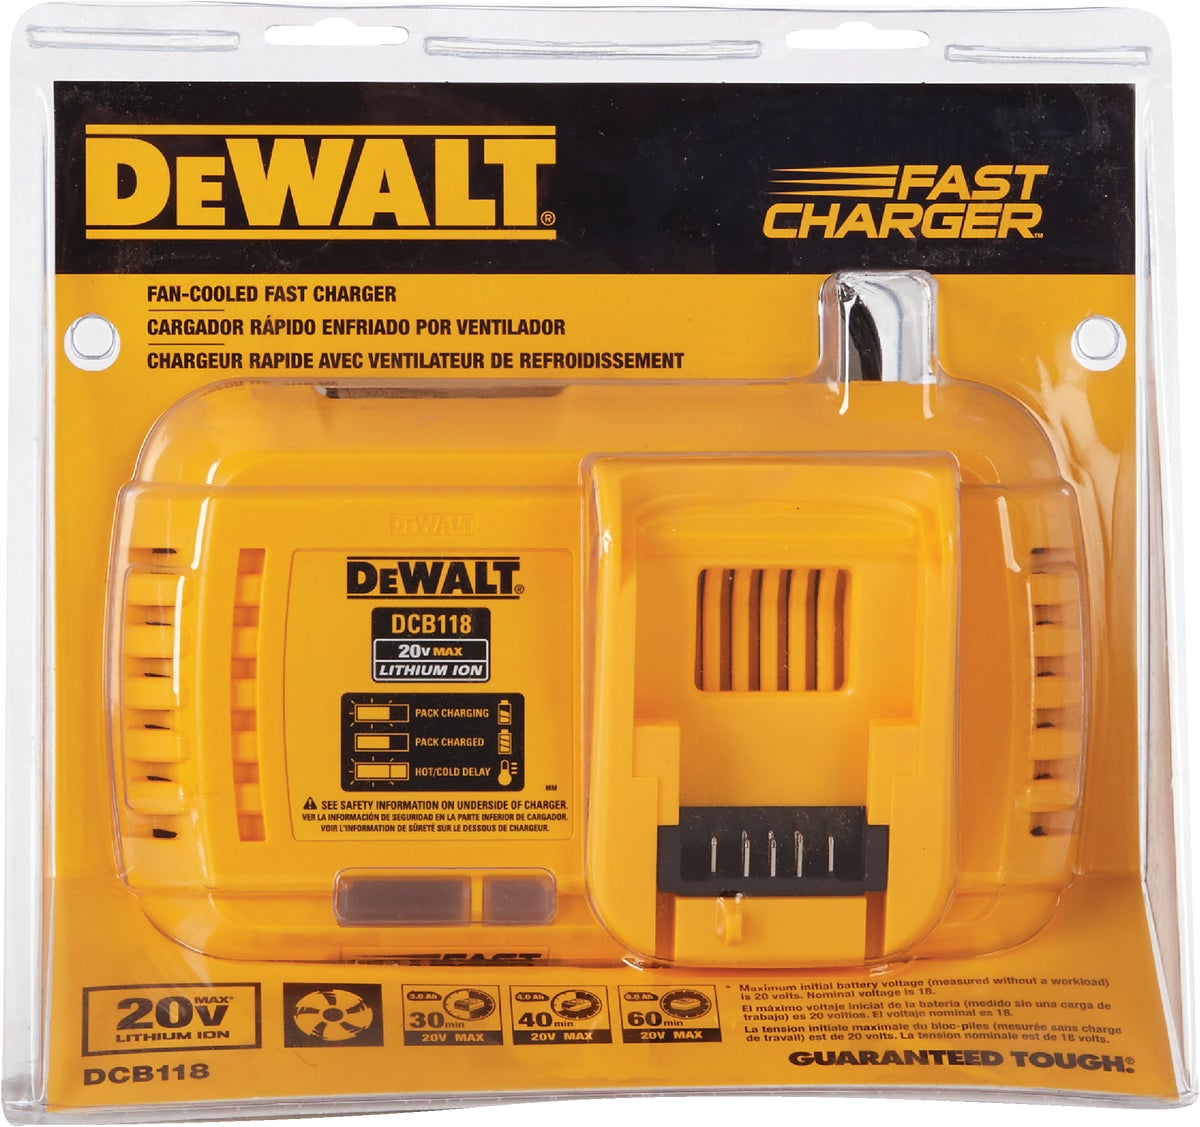 dewalt 20v battery won t charge